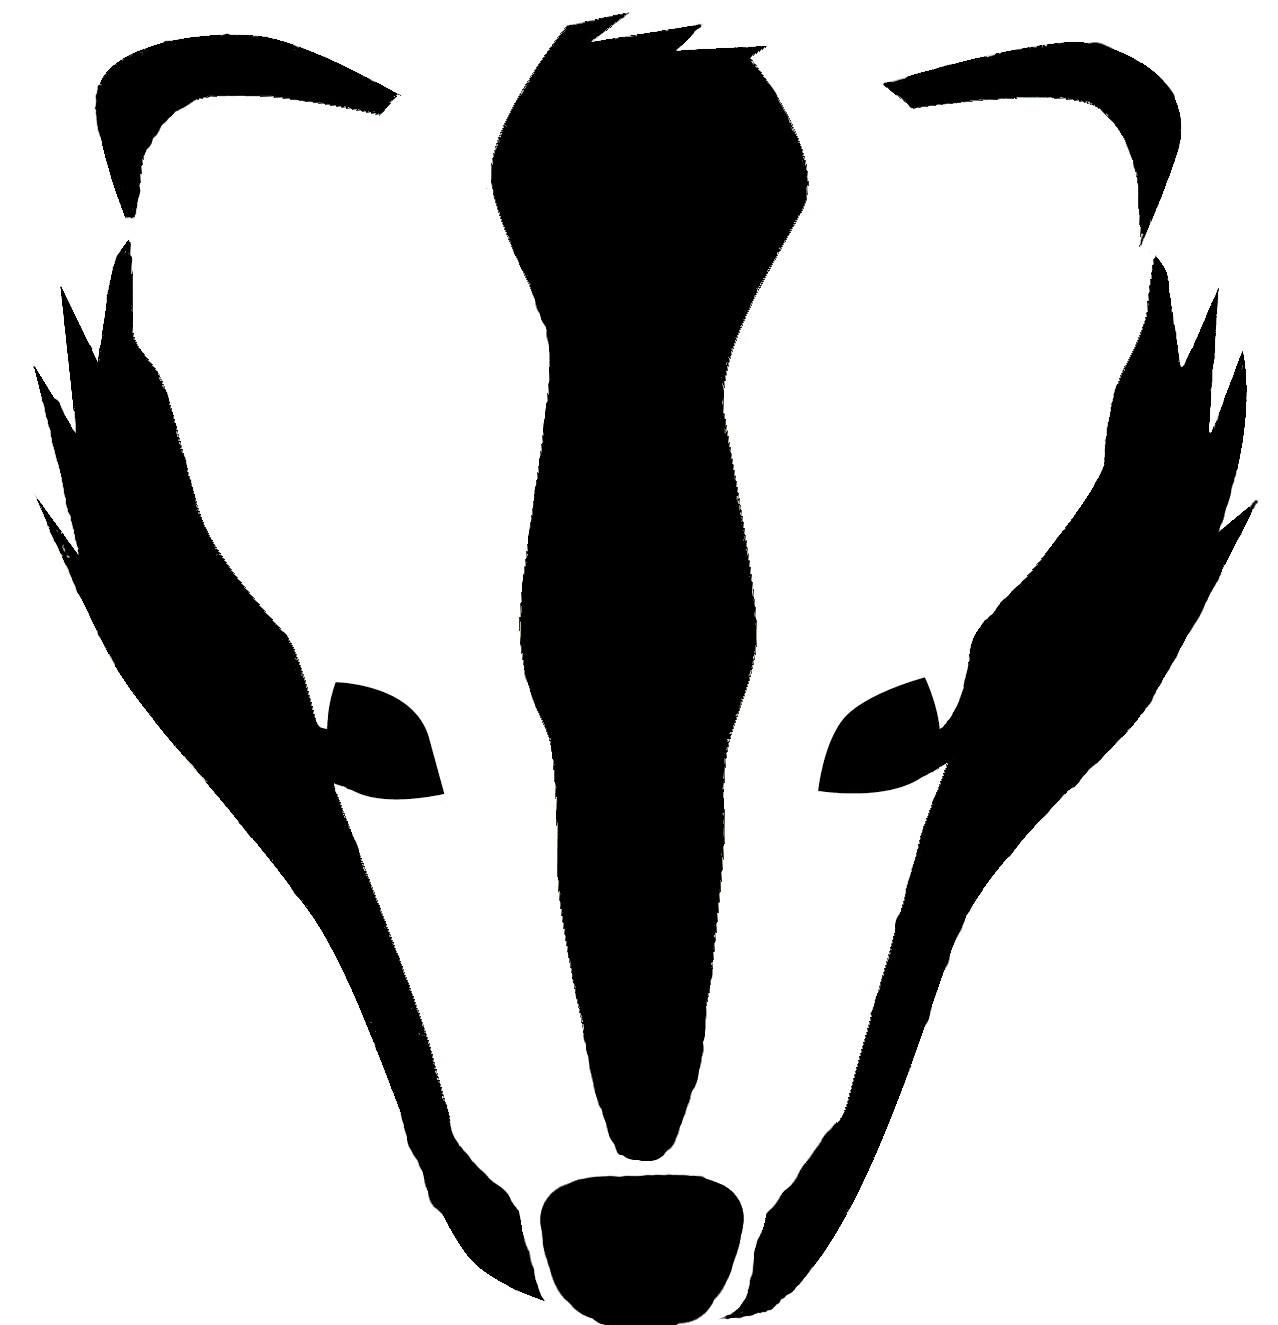 Badger clipart badger face. For pumpkin carving patterns